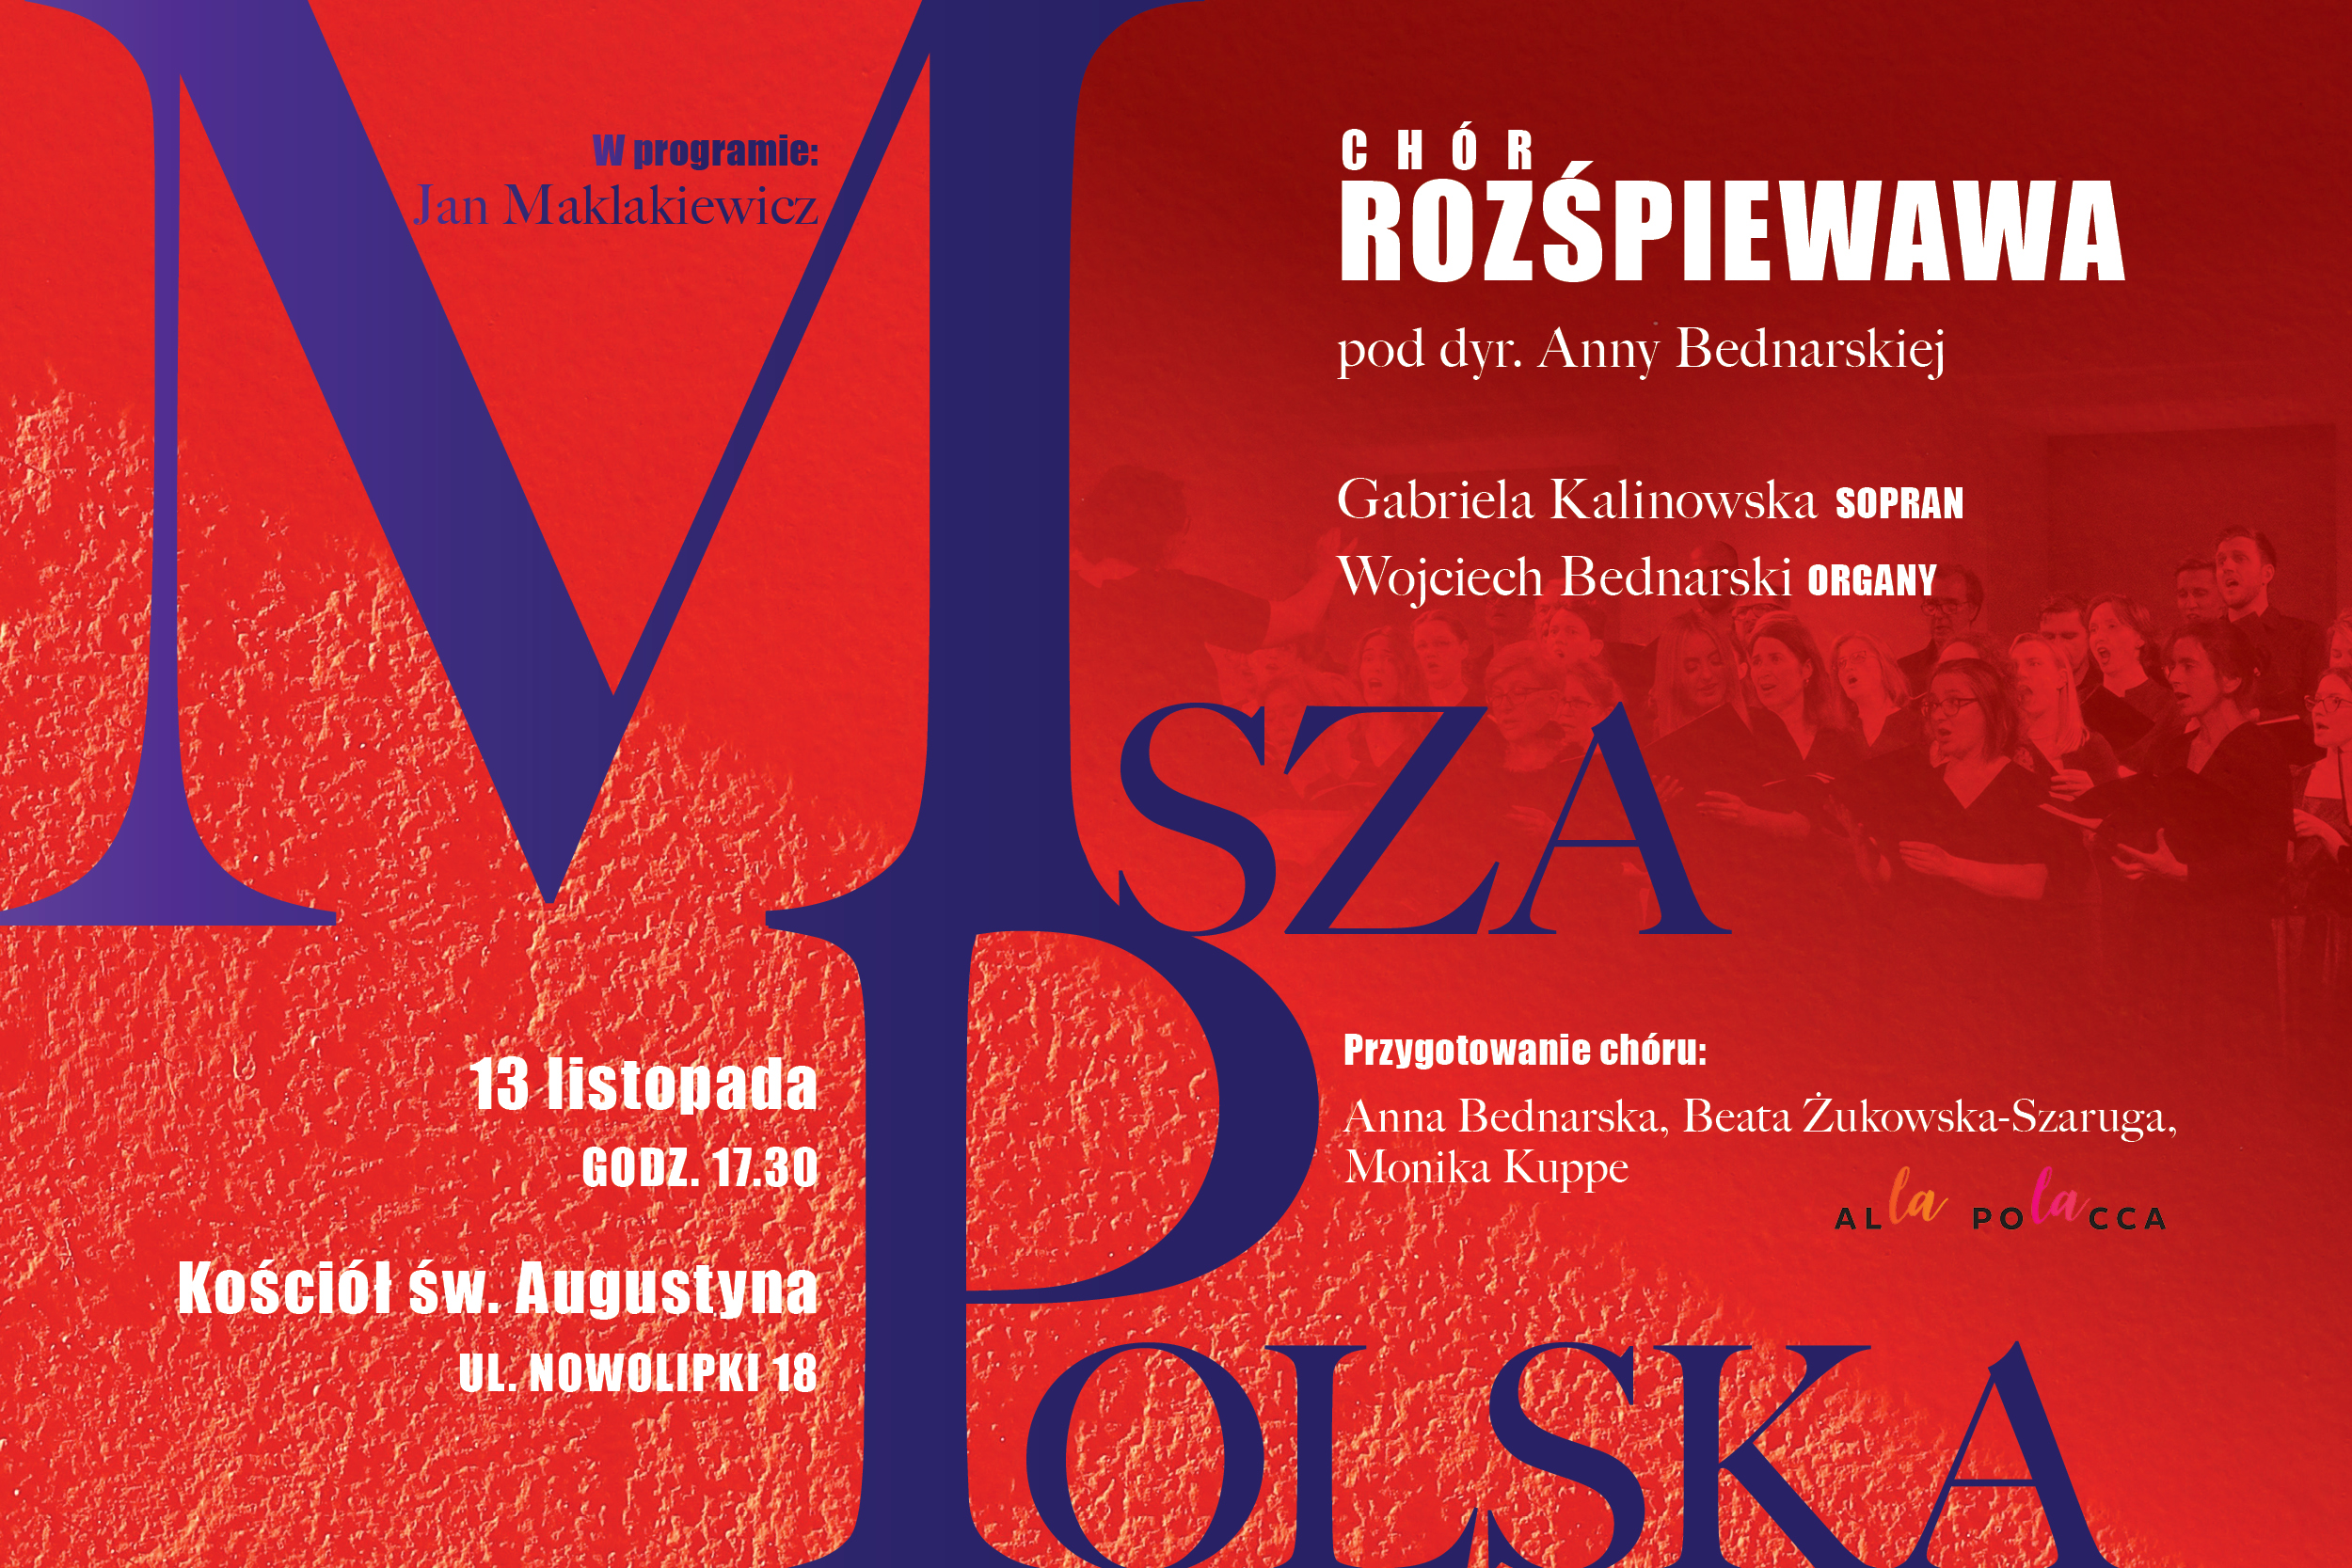 Chór RozśpieWawa - "Msza Polska" J. Maklakiewicza - 13.11